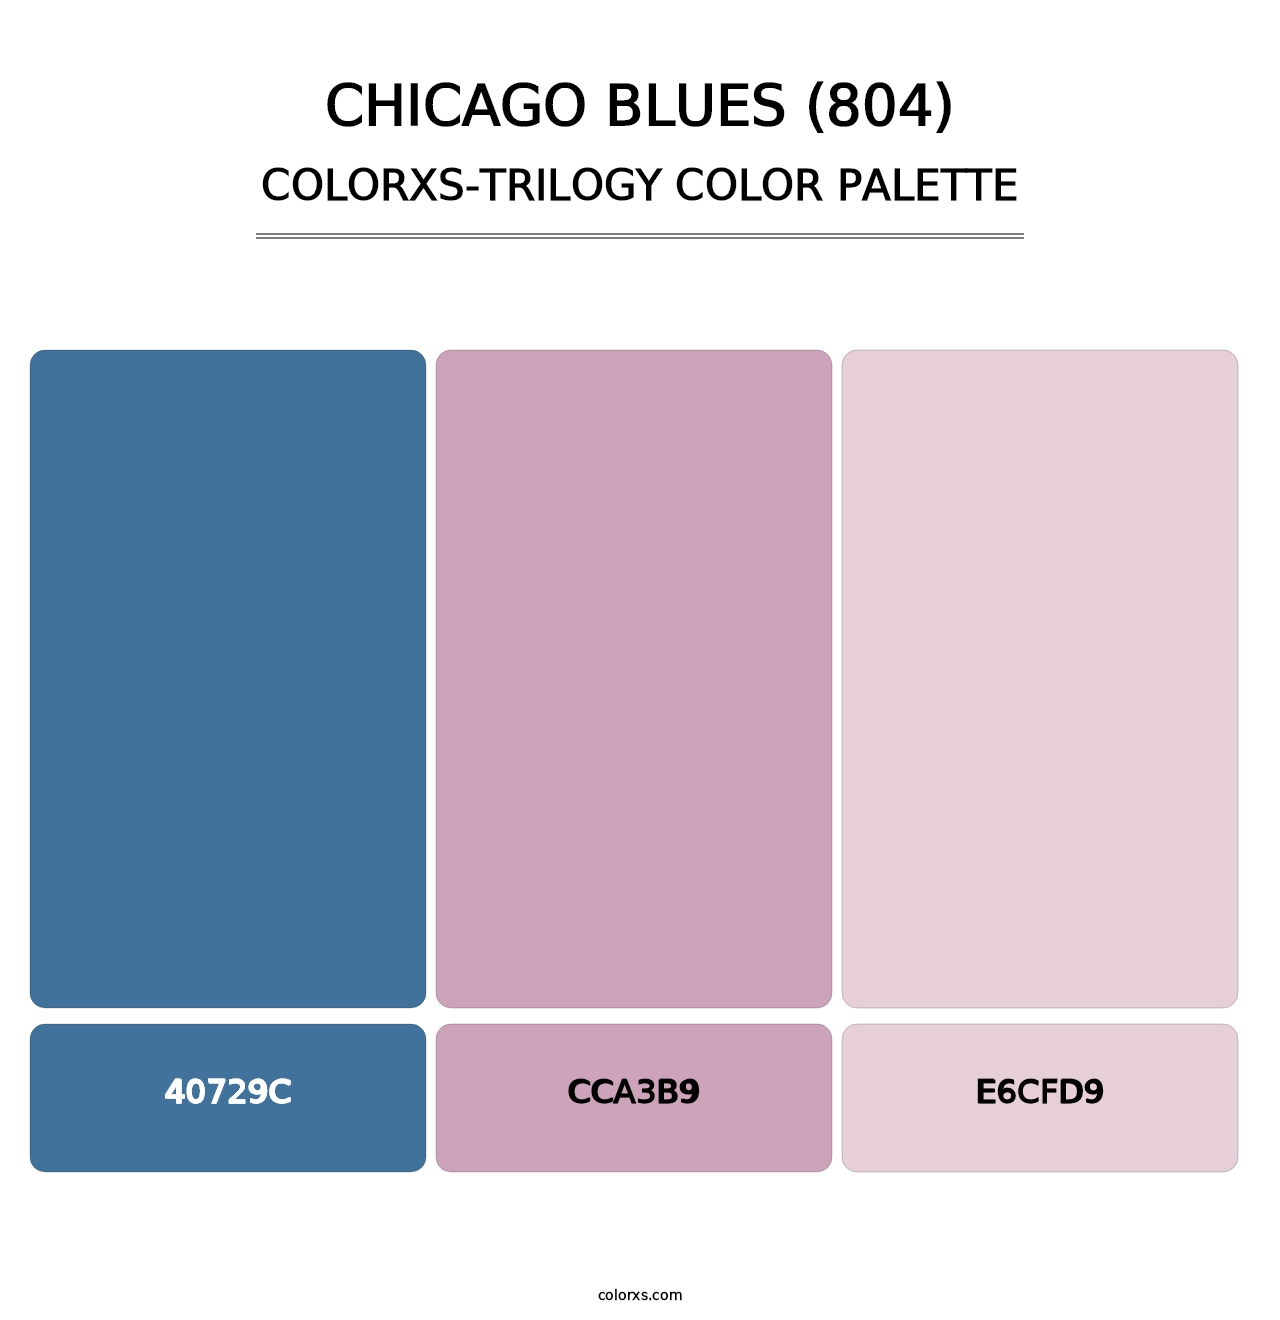 Chicago Blues (804) - Colorxs Trilogy Palette